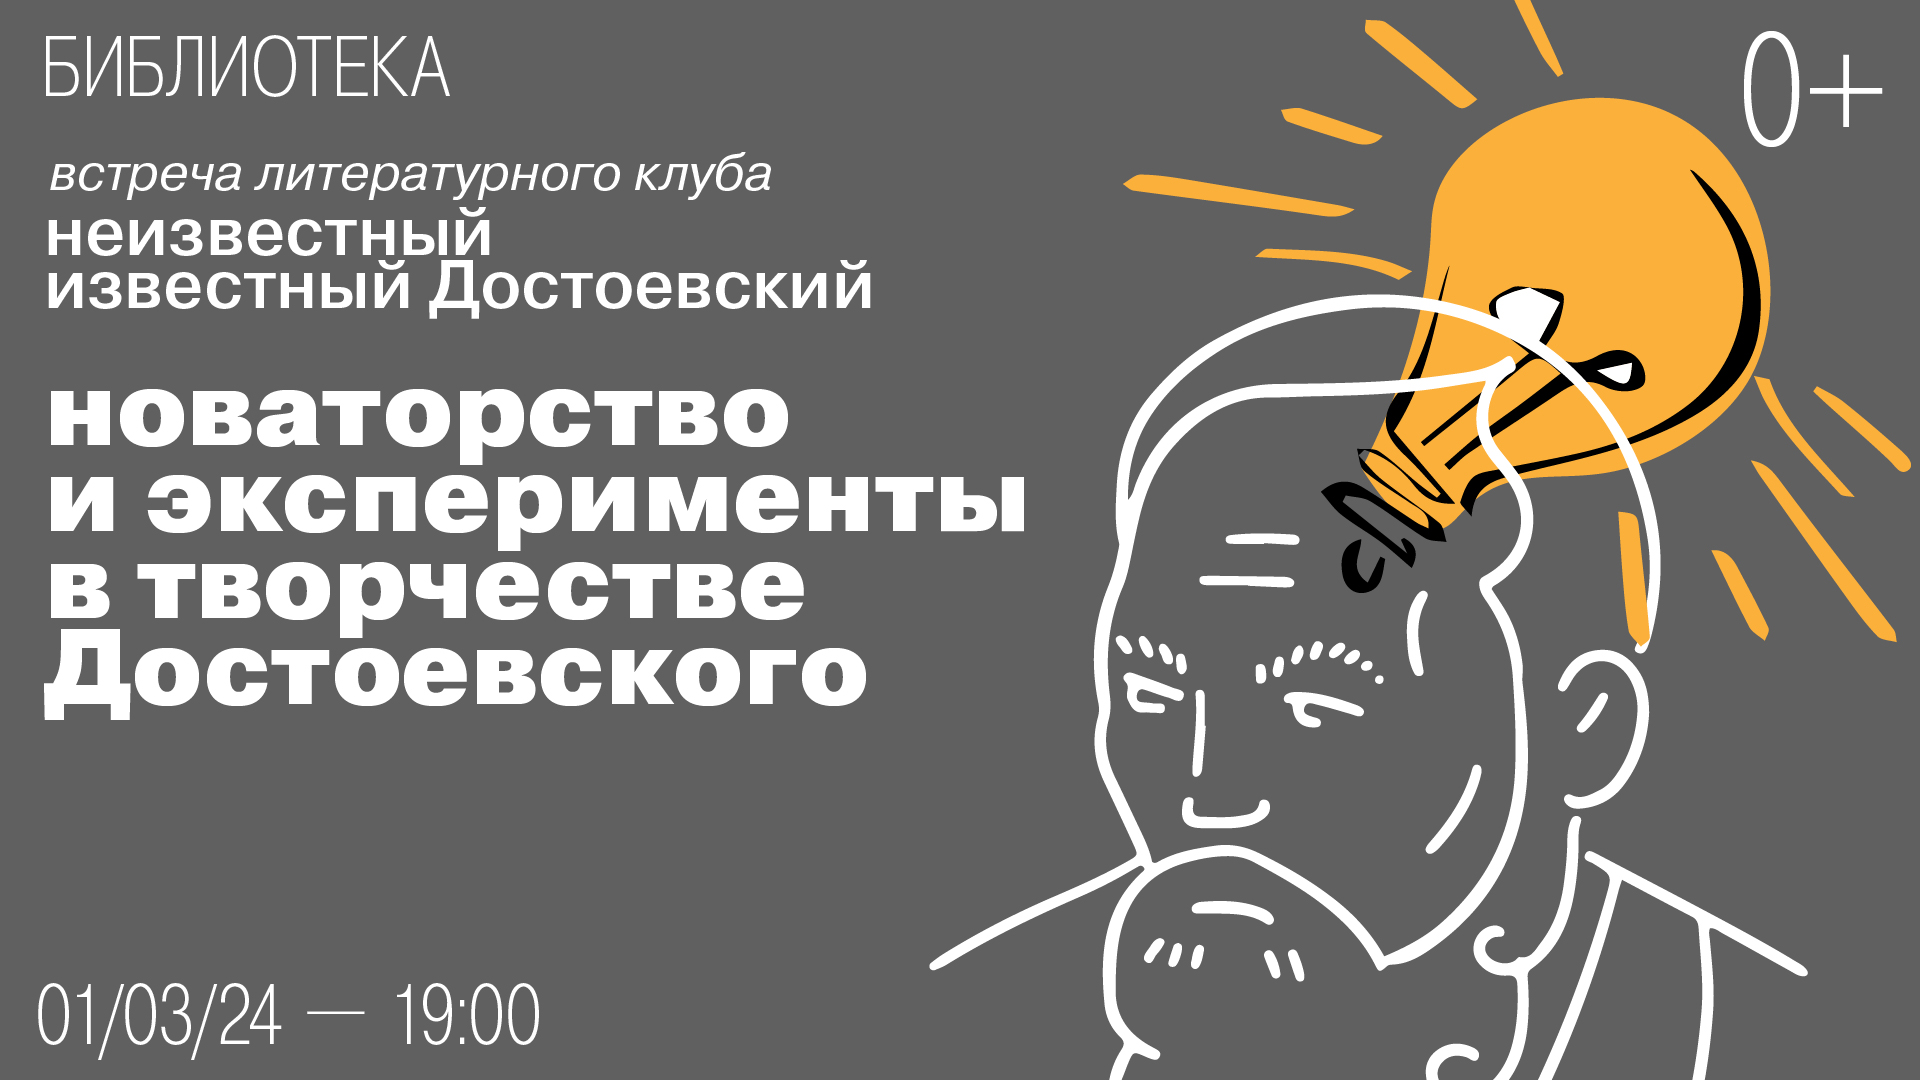 Встреча литературного клуба «Неизвестный известный Достоевский»:<br>Новаторство и эксперименты в творчестве Достоевского